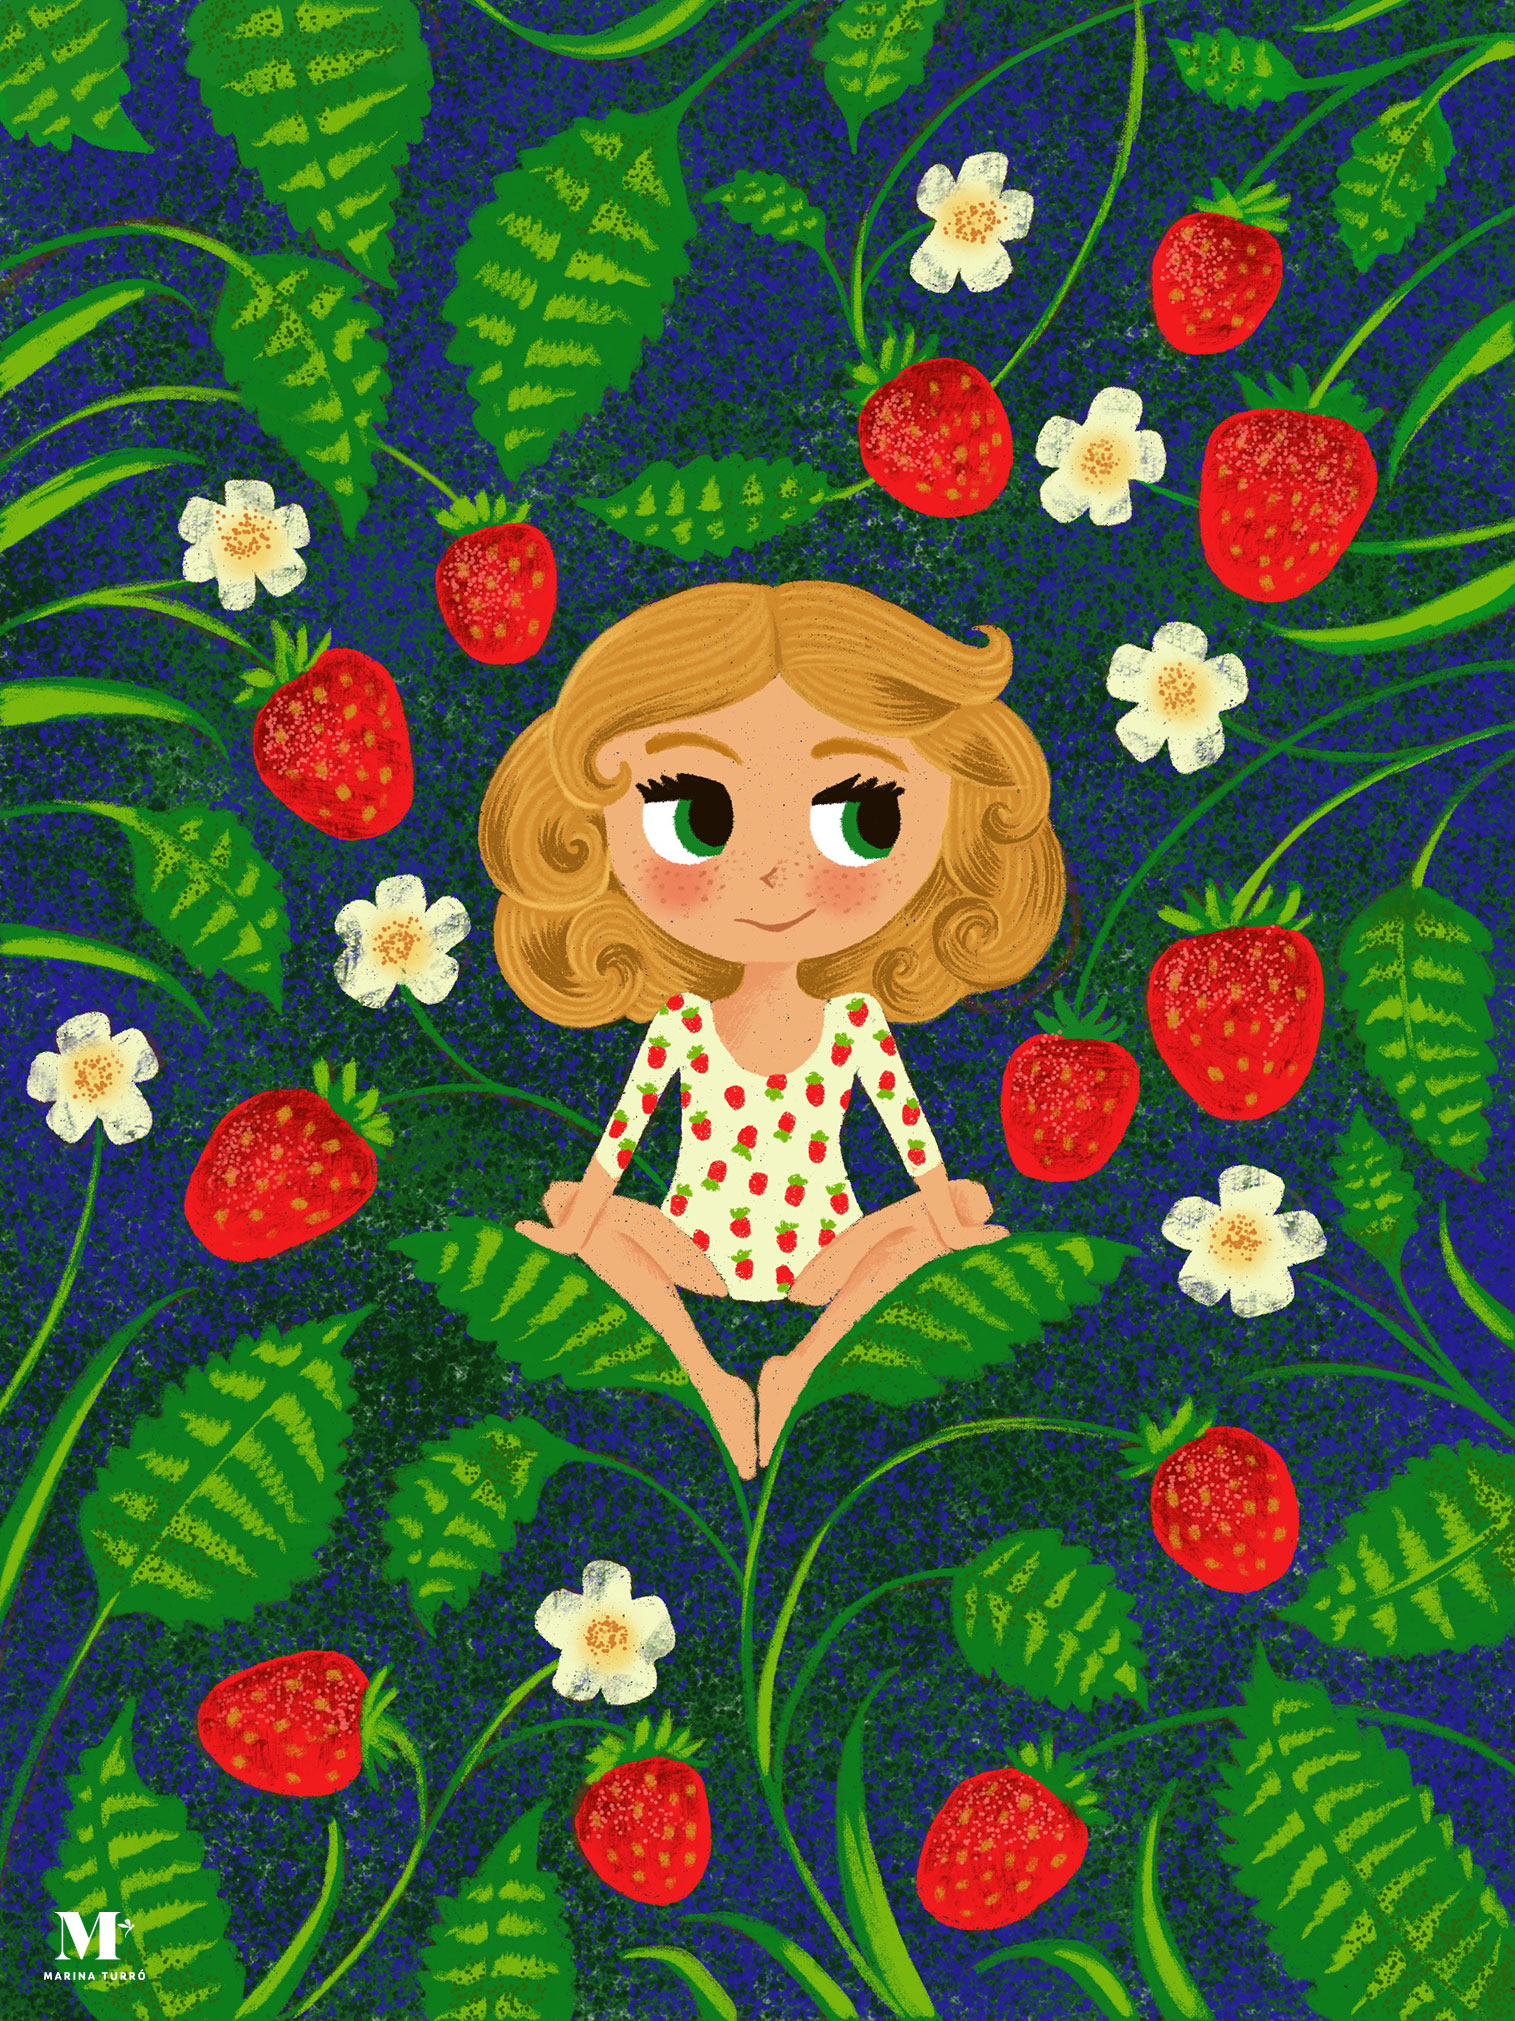 Strawberry Marina